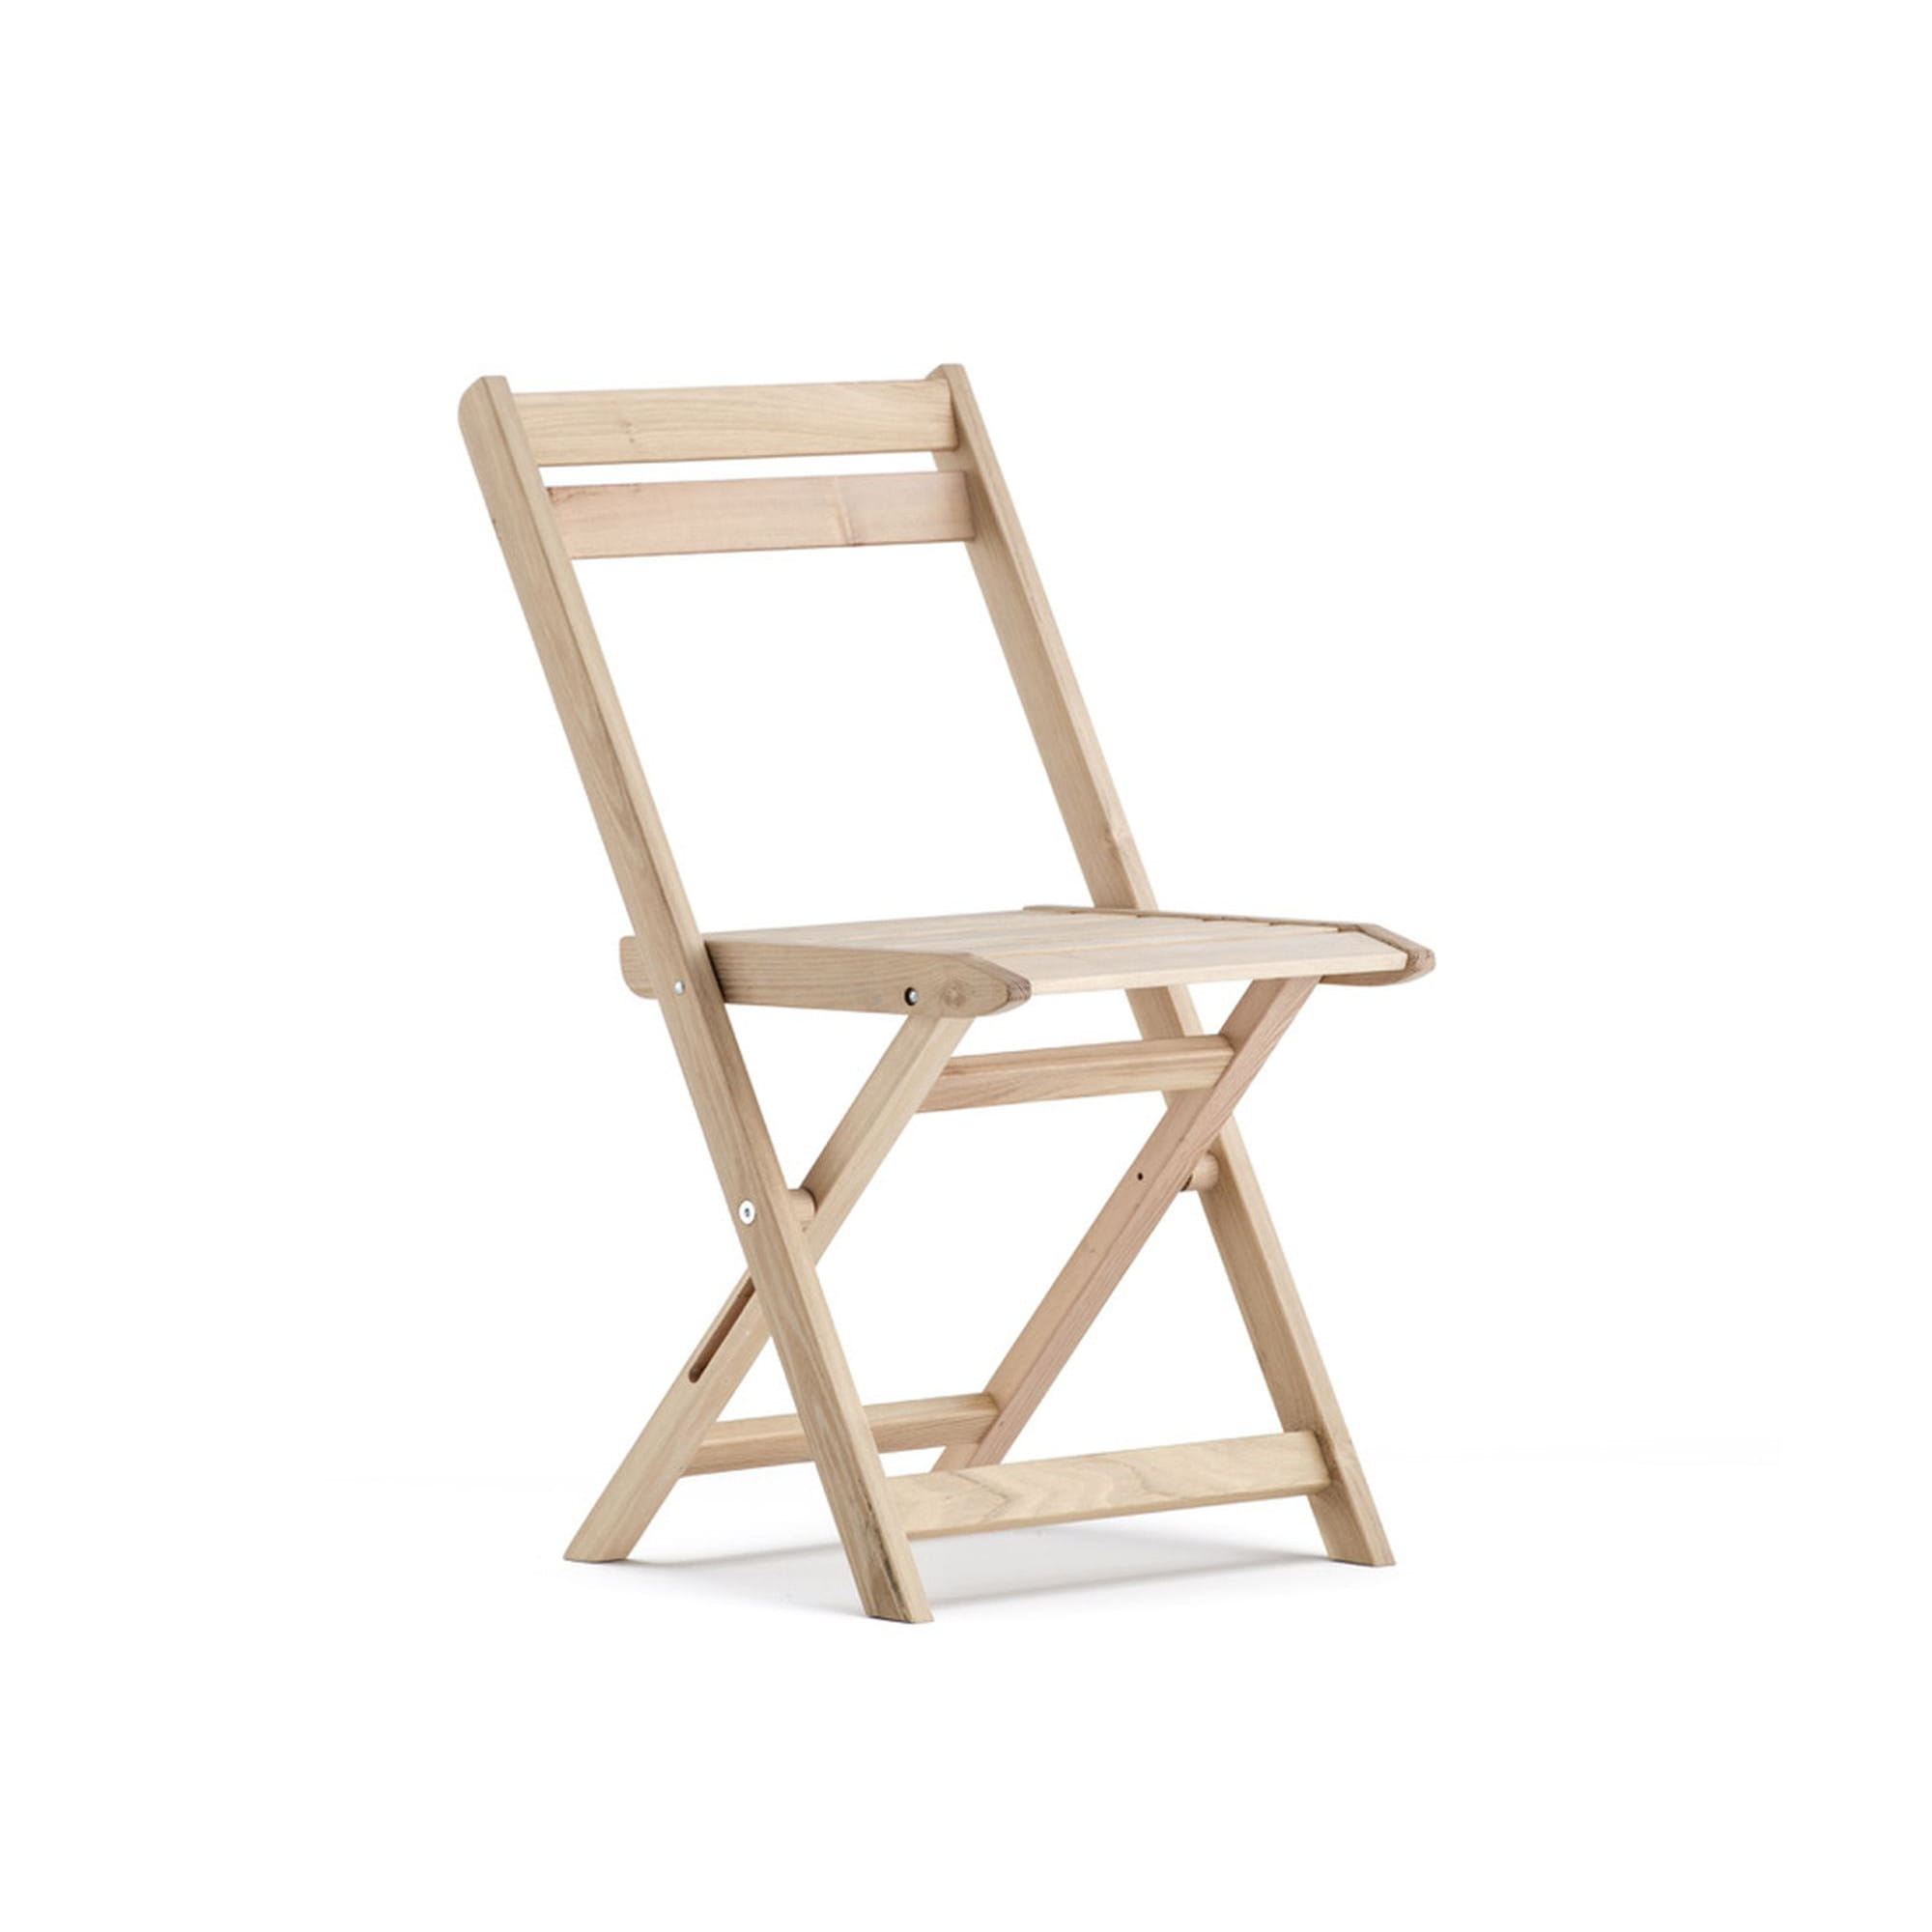 Леруа складные стулья. Стул складной деревянный. Раскладной стул со спинкой из дерева. Складной стул дерево. Складной стул со спинкой из дерева.